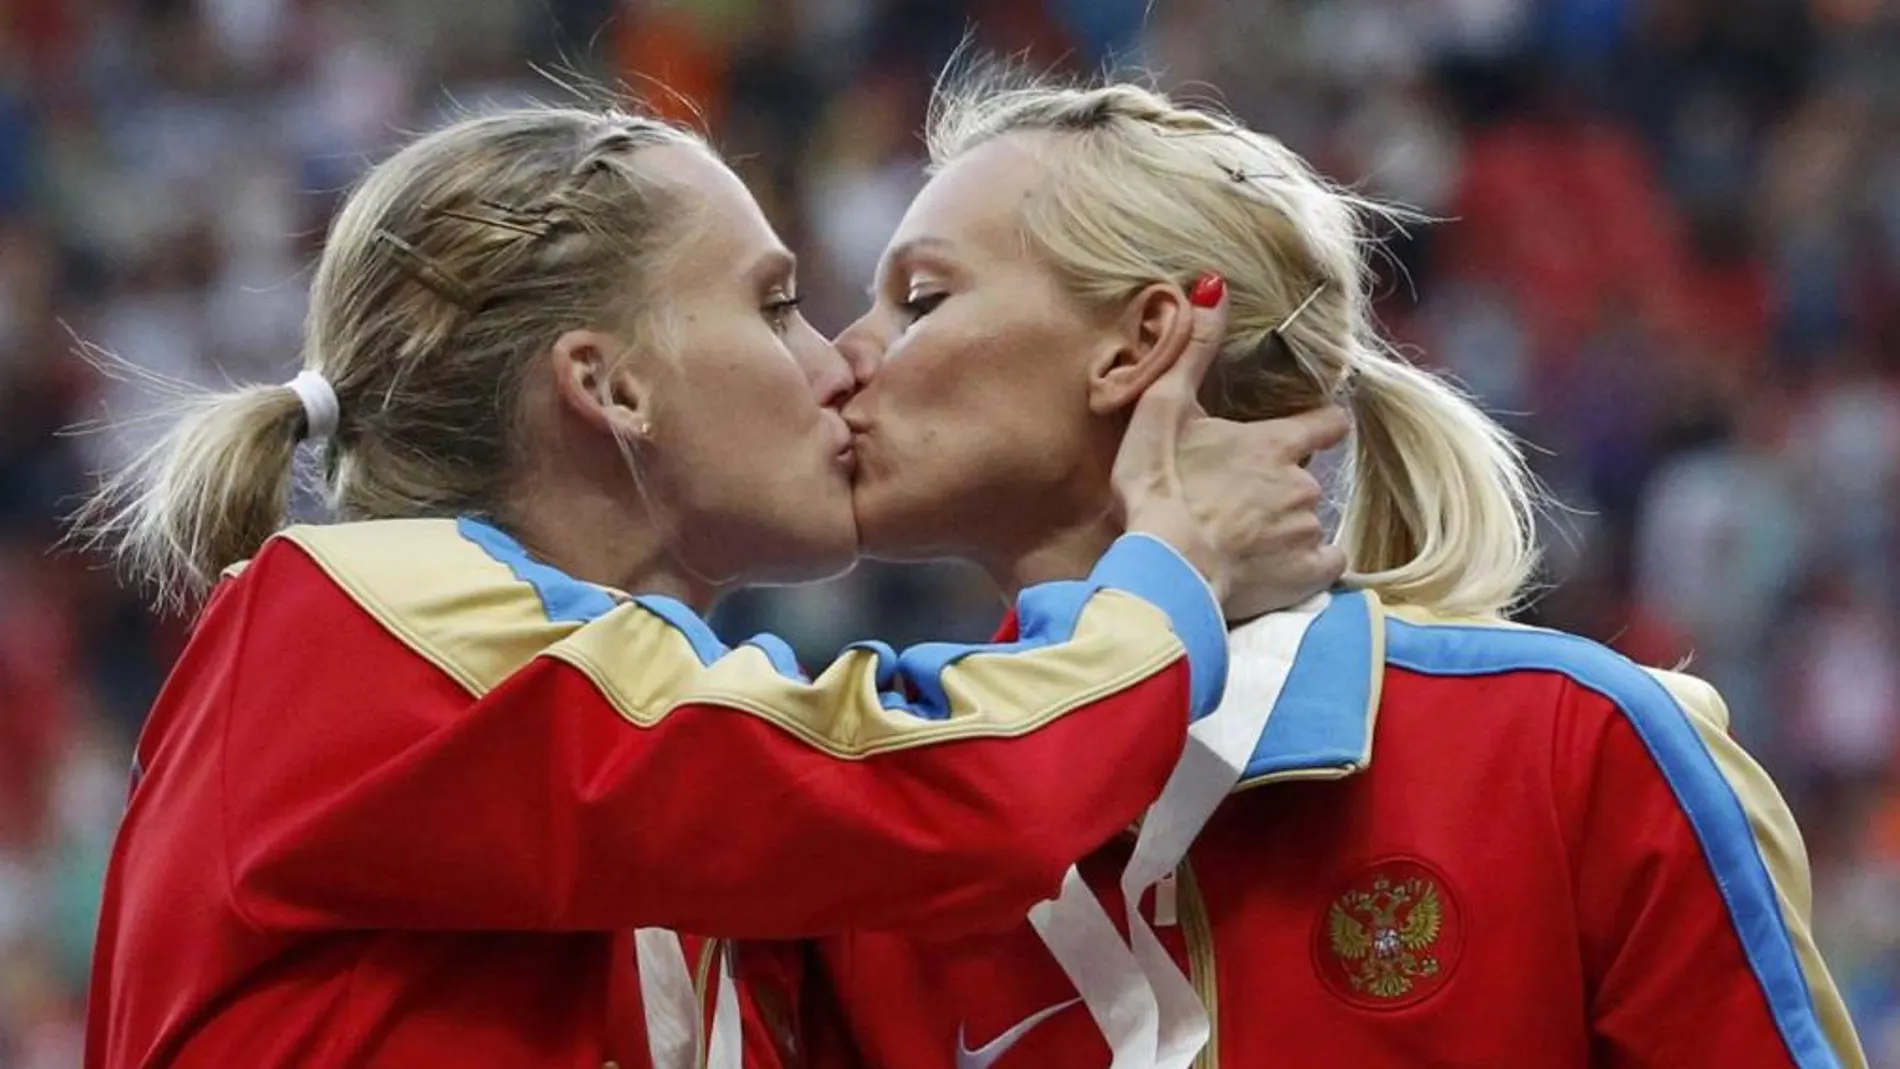 Las atletas Kseniya Ryzhova y Tatyana Firova, se dan un beso en la boca tras conseguir la medalla de oro en el Mundial De Moscú